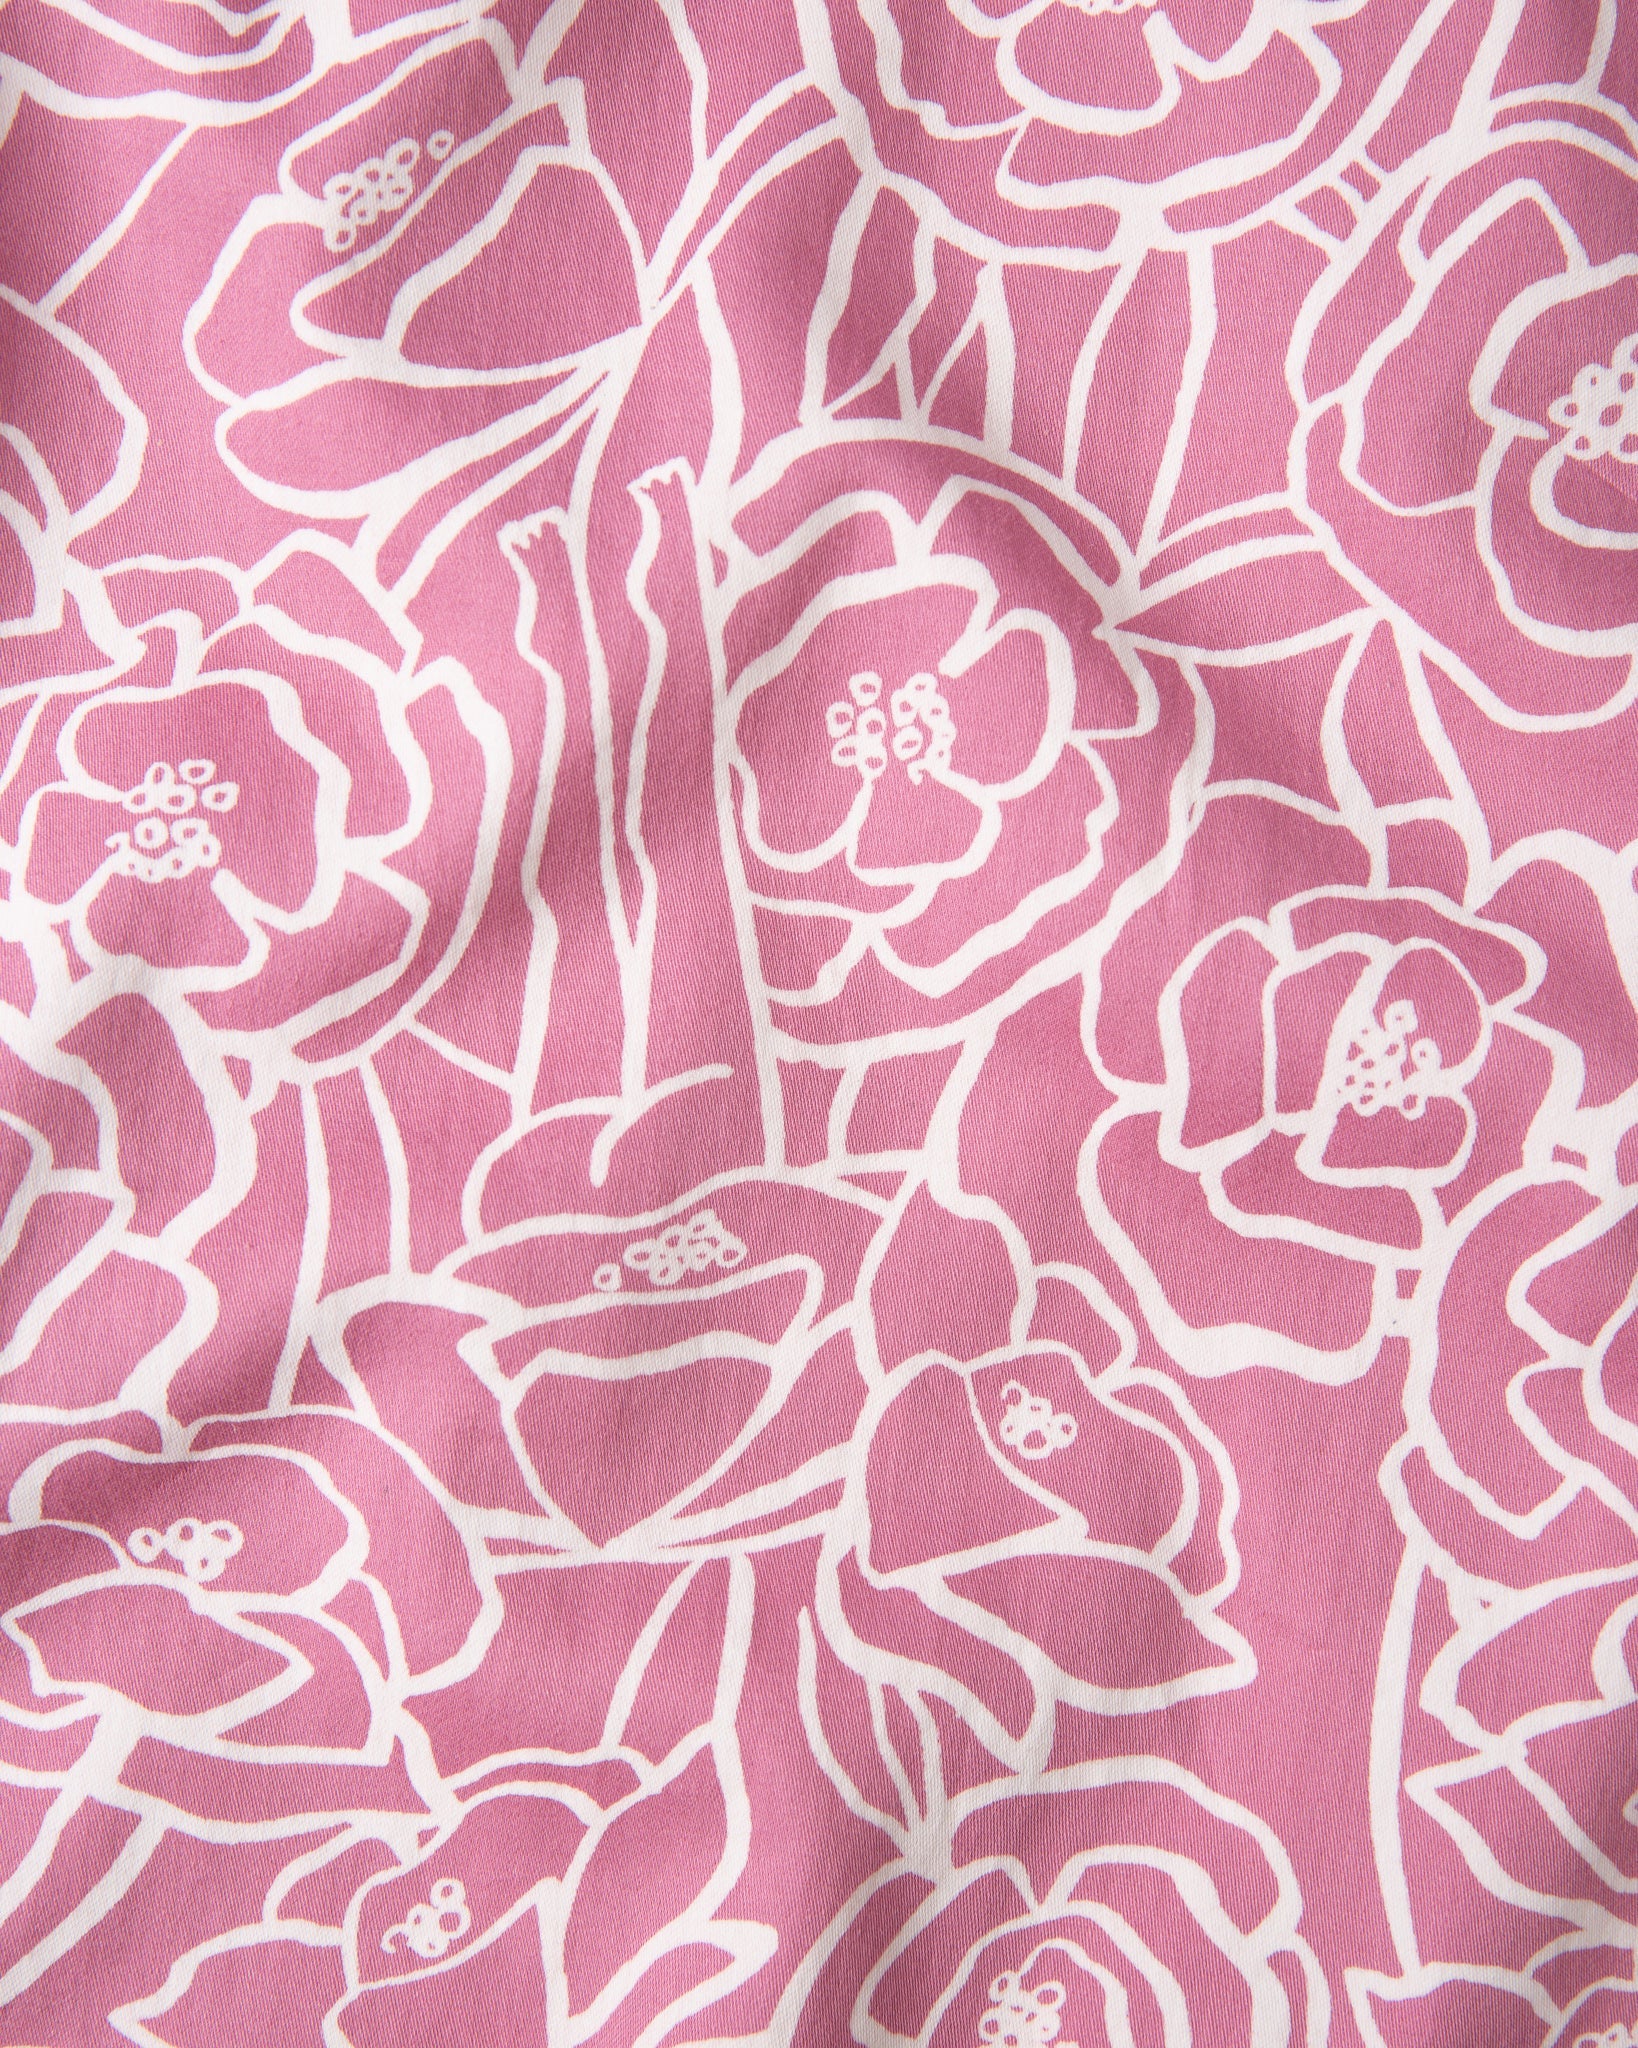 Pink Bums & Roses Organic Shorts Sleep Shorts Yawn 